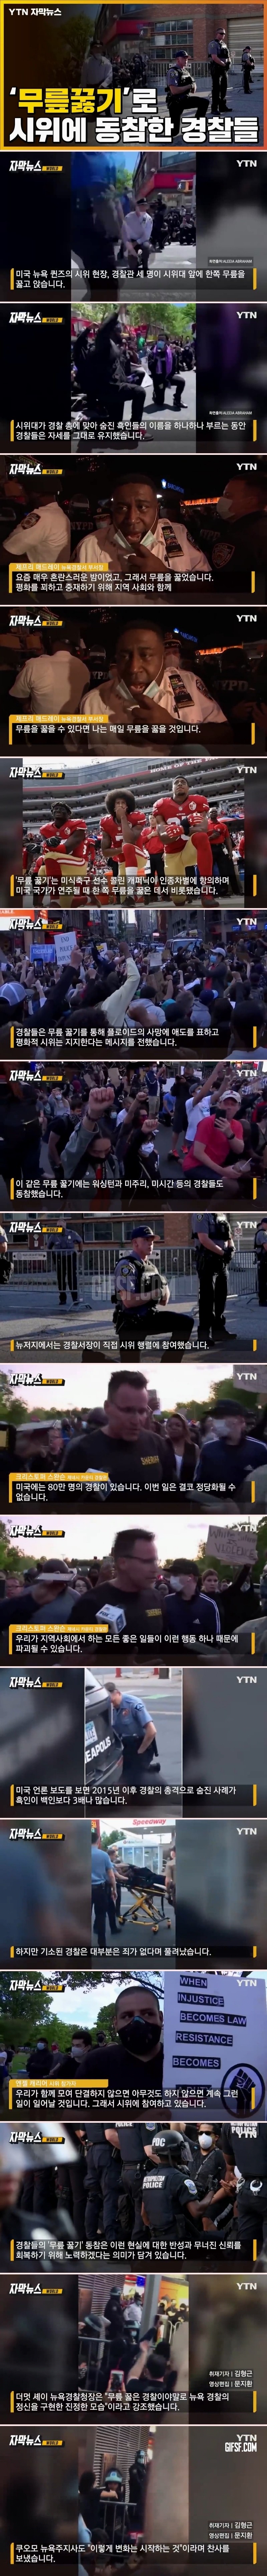 무릎 꿇기로 ',플로이드 사건', 시위에 동참한 경찰들 .jpg